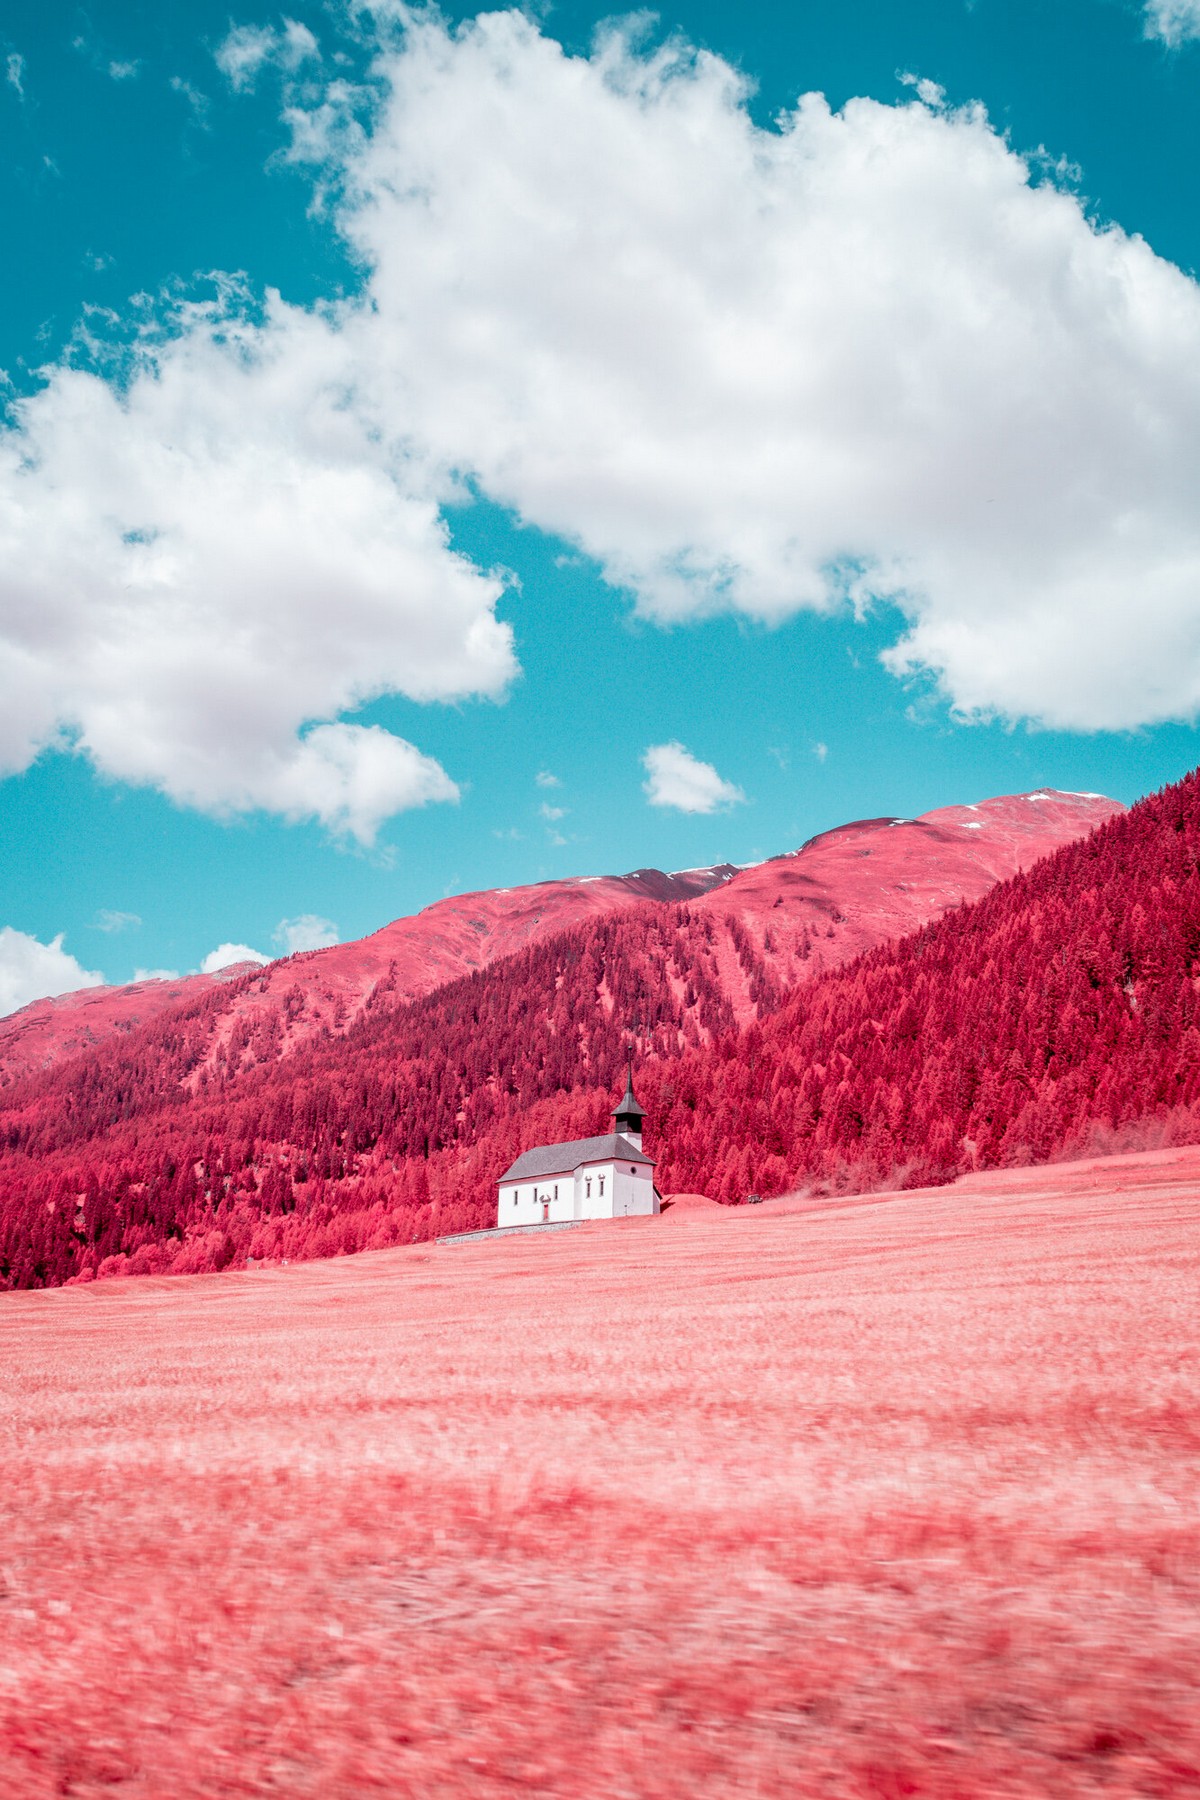 Сюрреалистические инфракрасные пейзажные снимки от Паоло Петтиджани